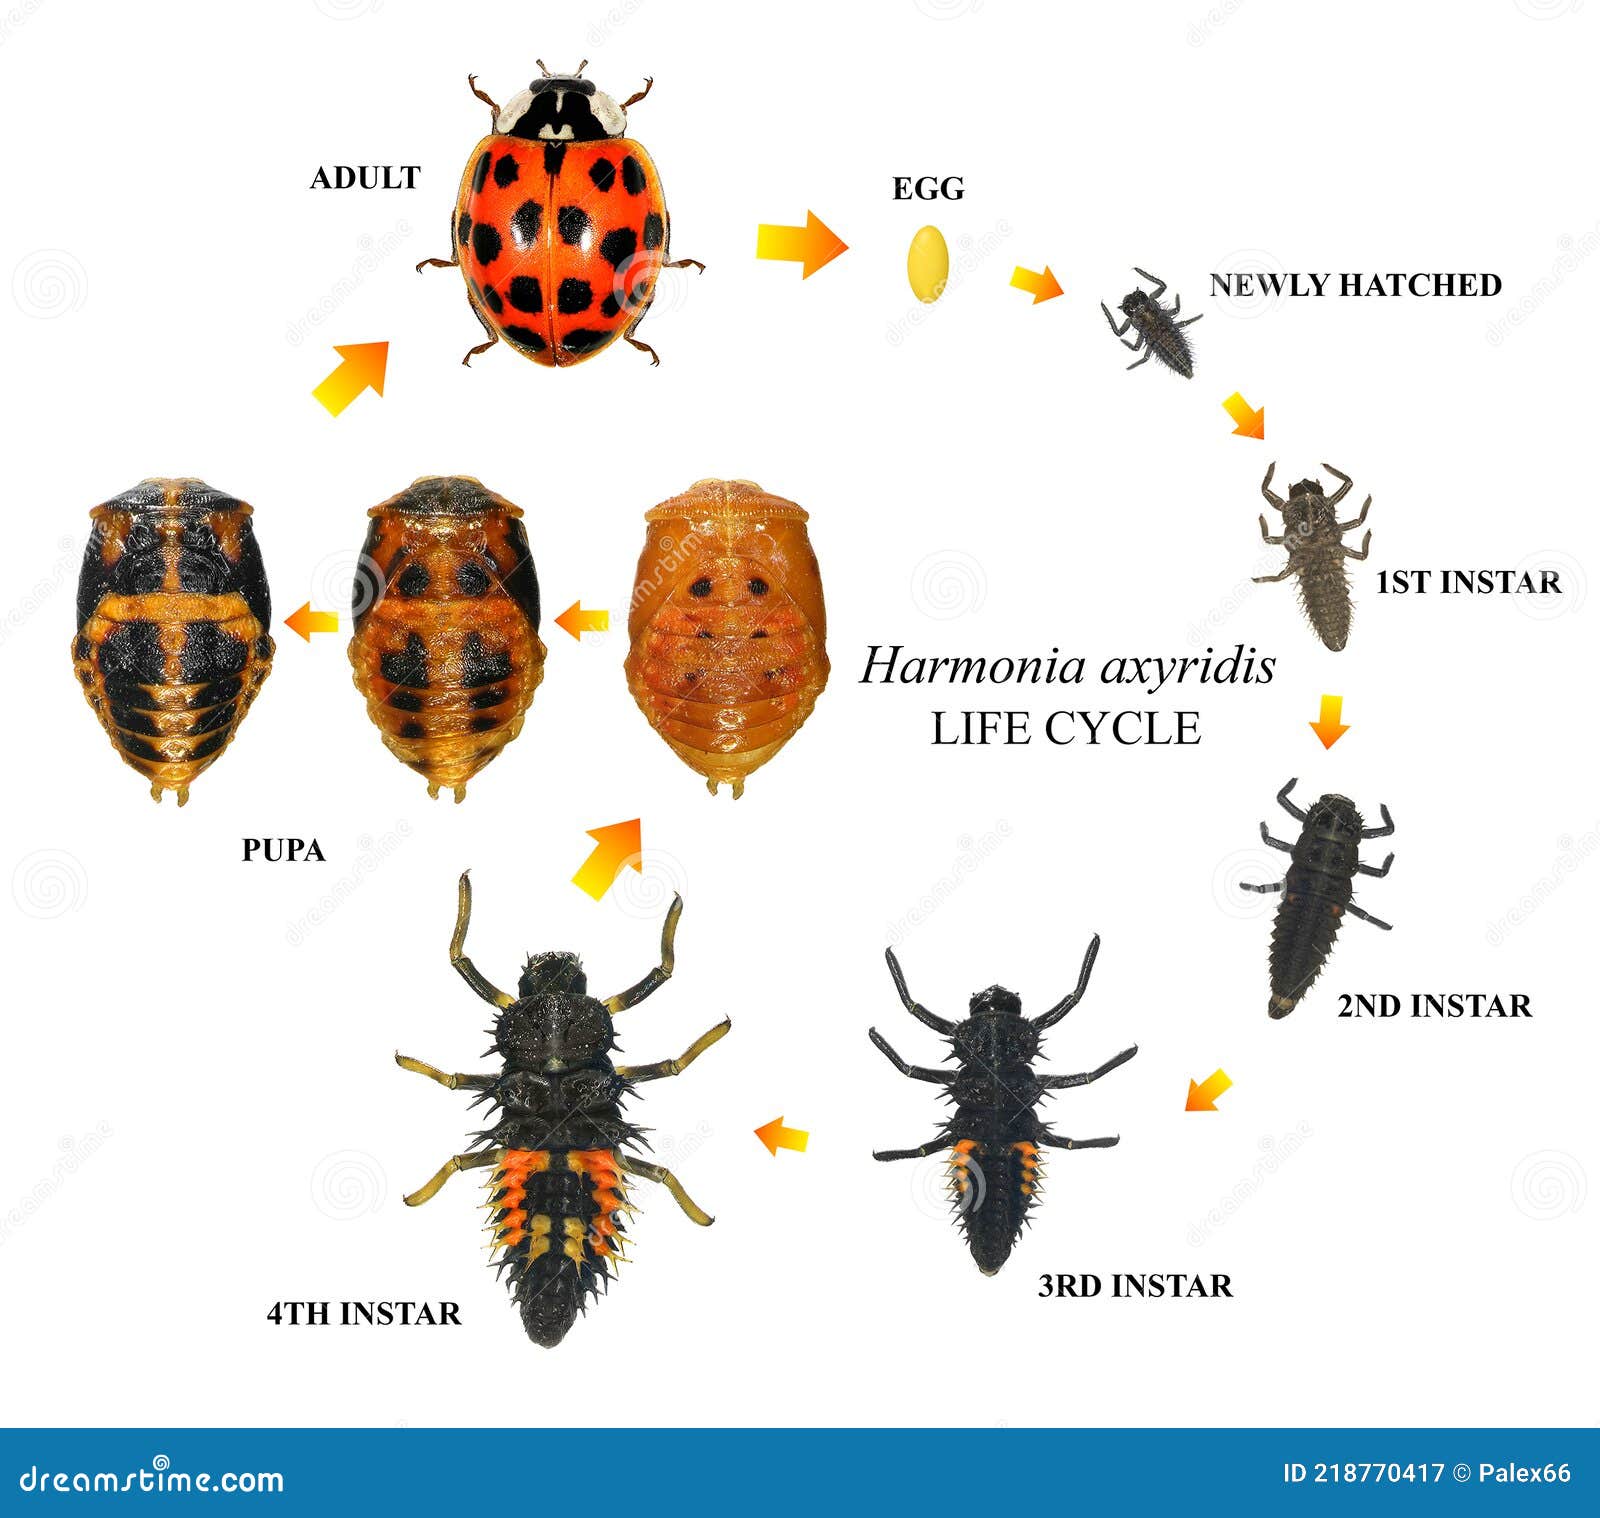 ladybug, harmonia axyridis